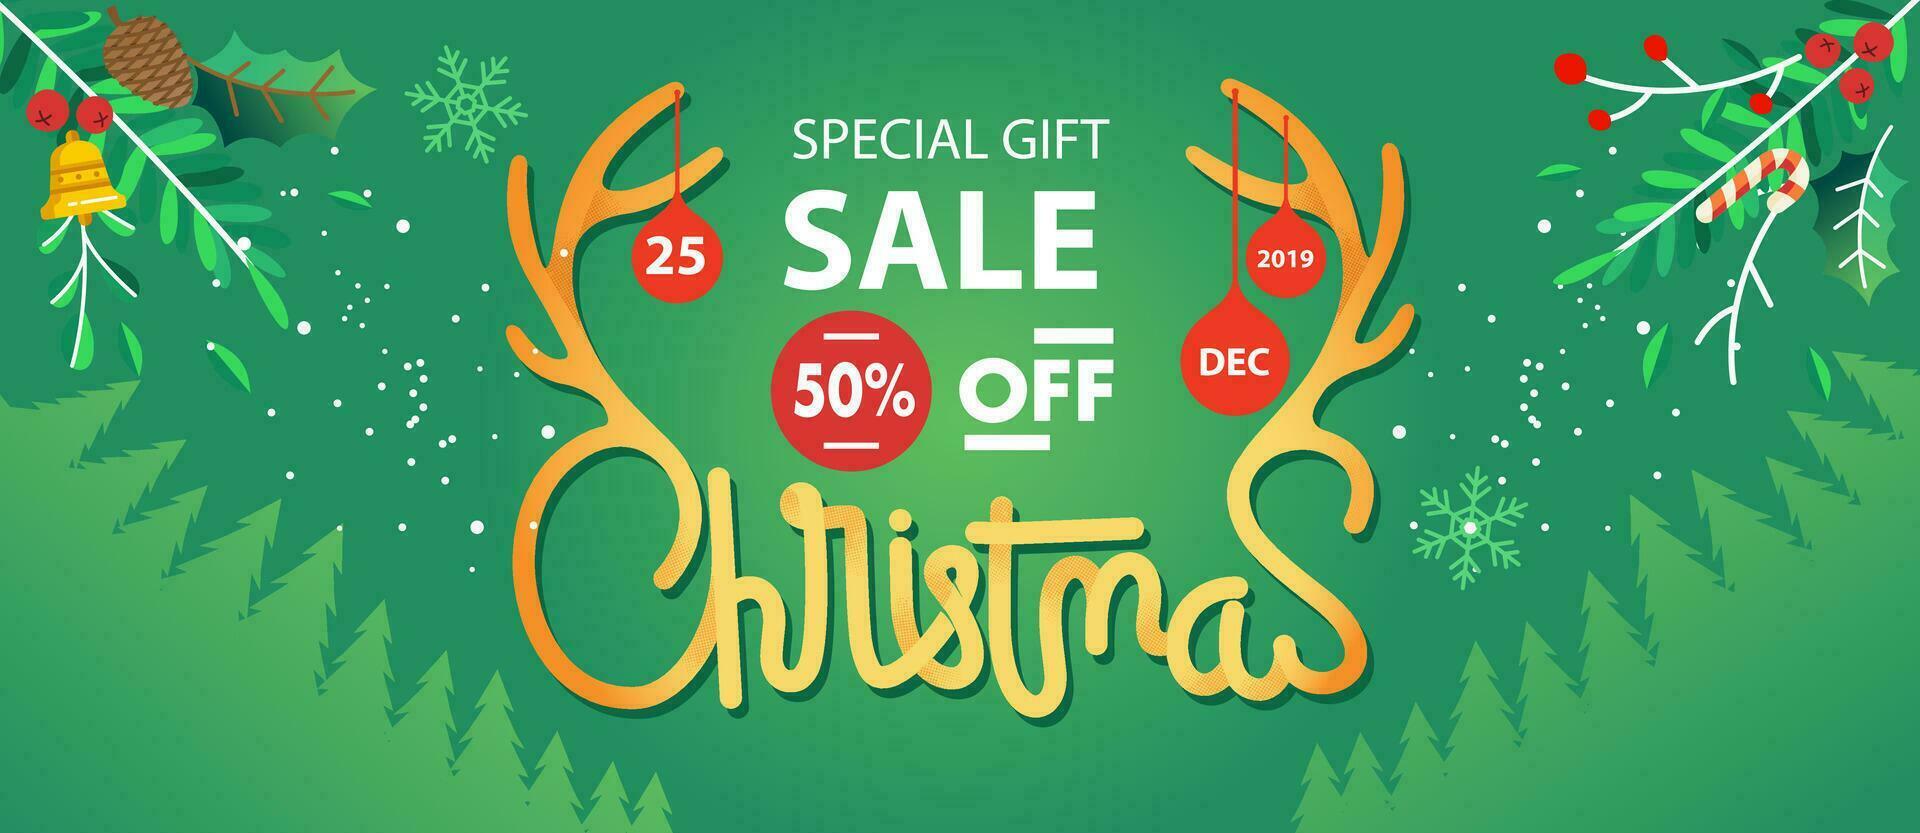 Natale vendita lettering illustrazione con Missletoe e pino albero come sfondo vettore